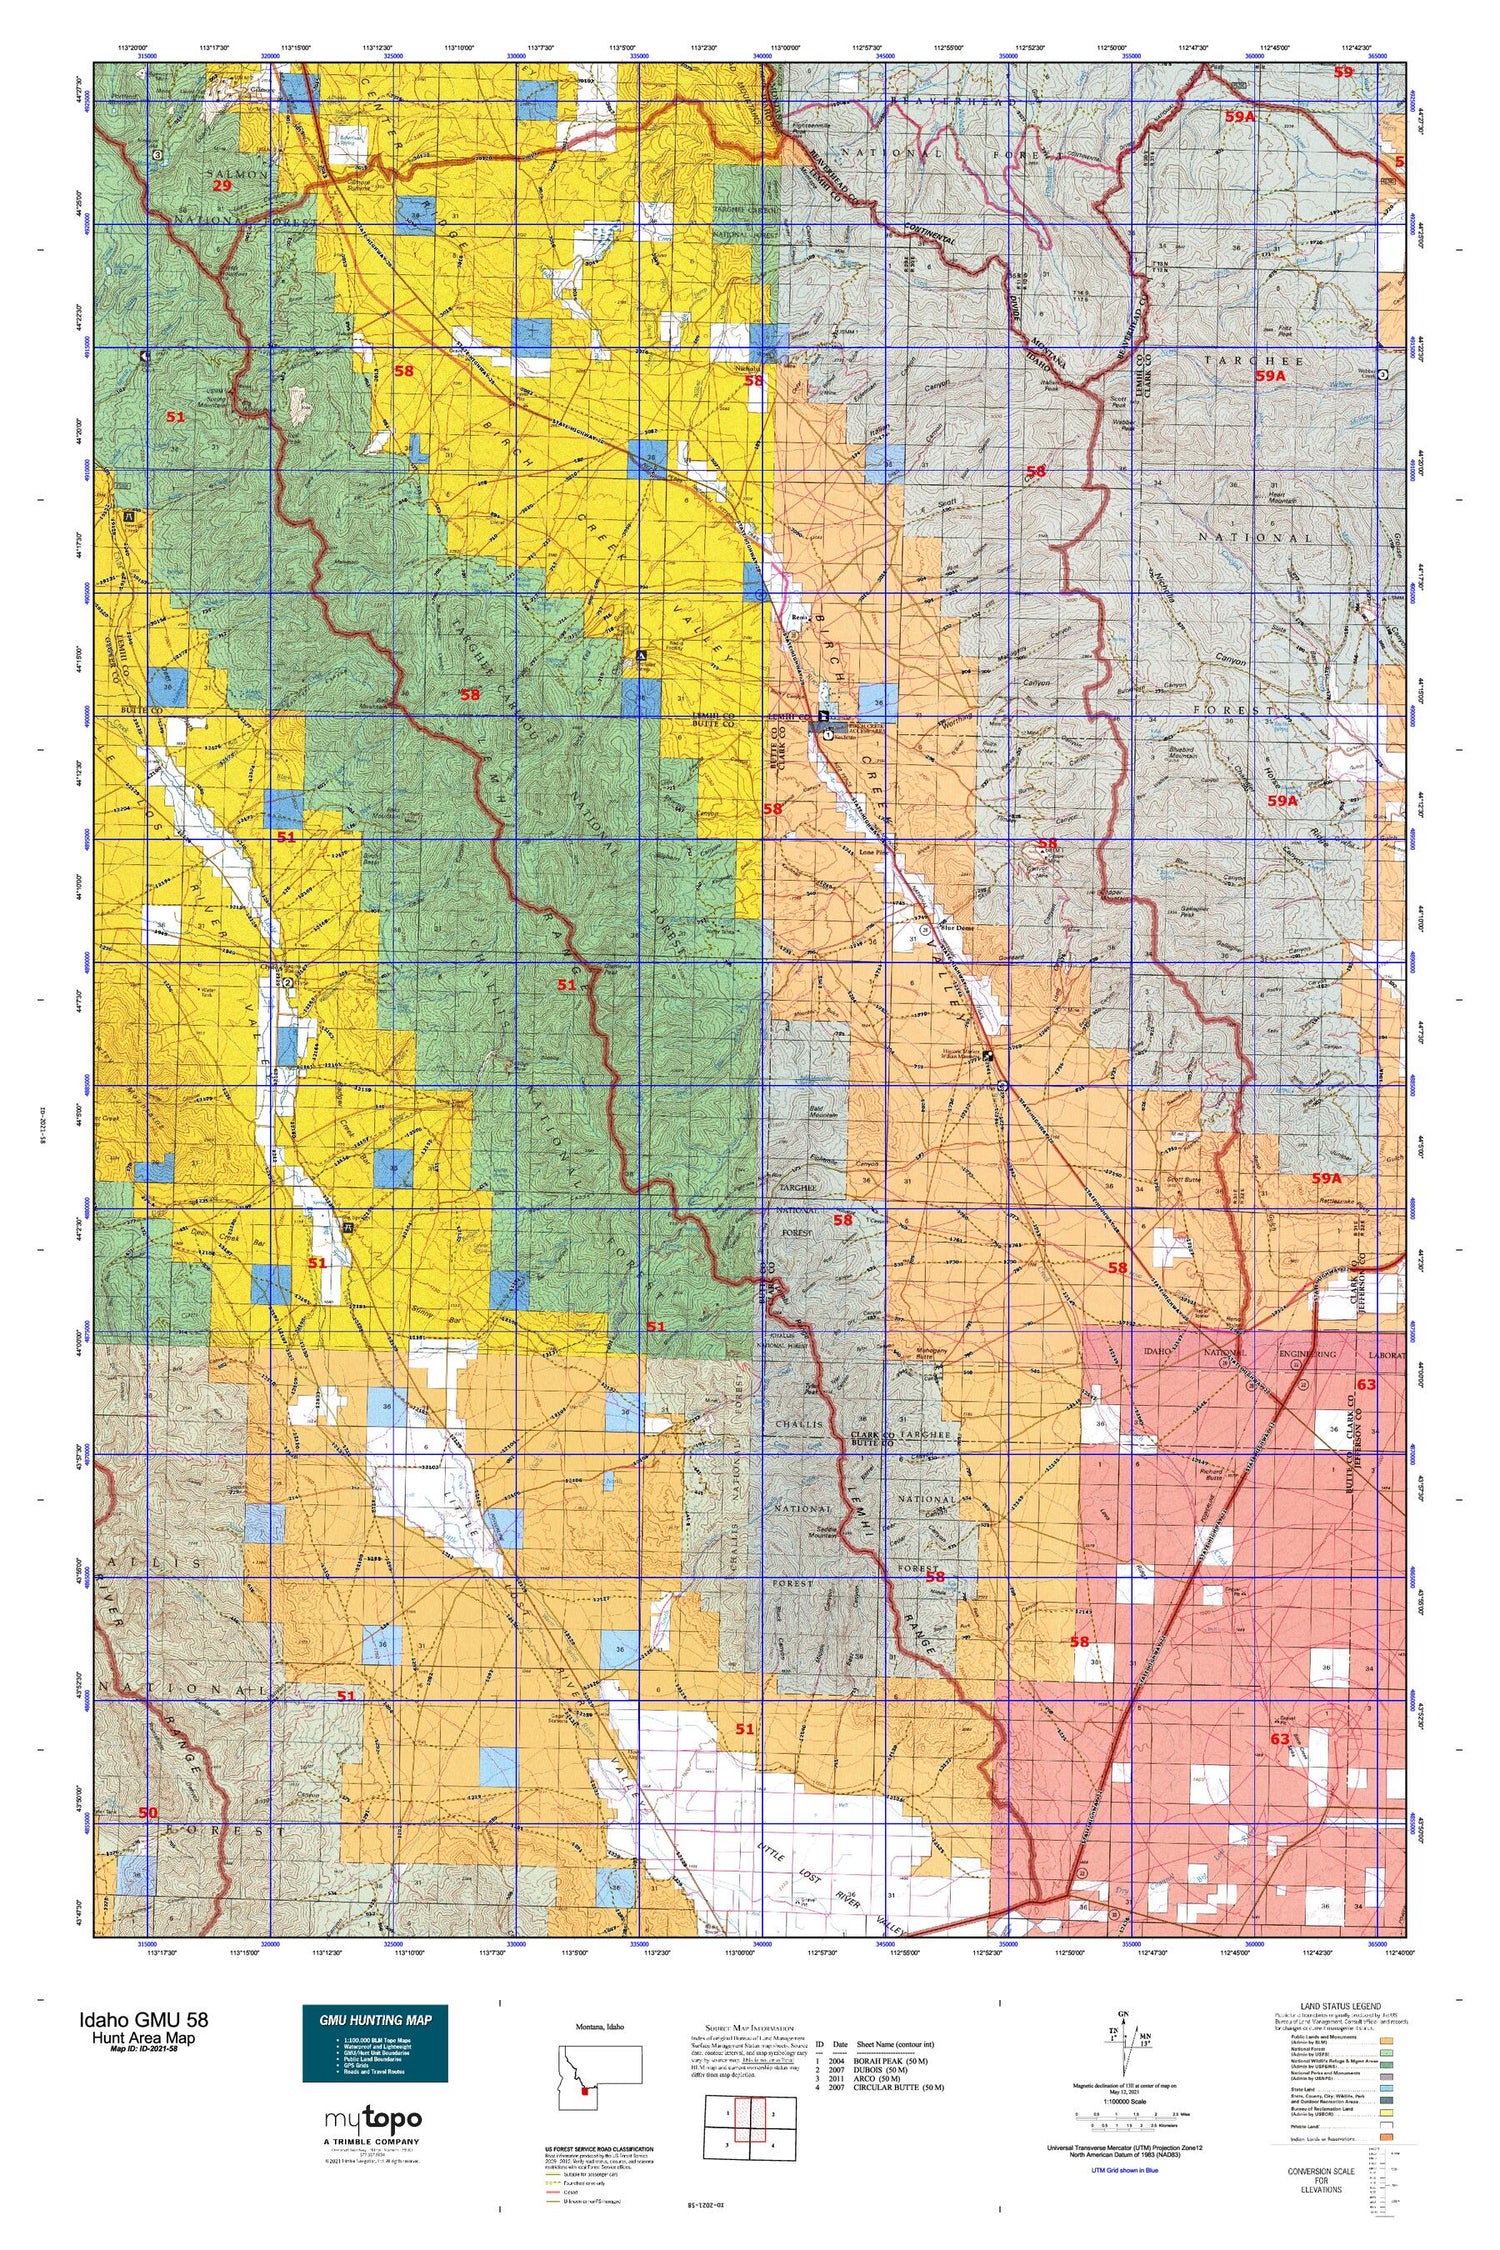 Idaho GMU 58 Map Image